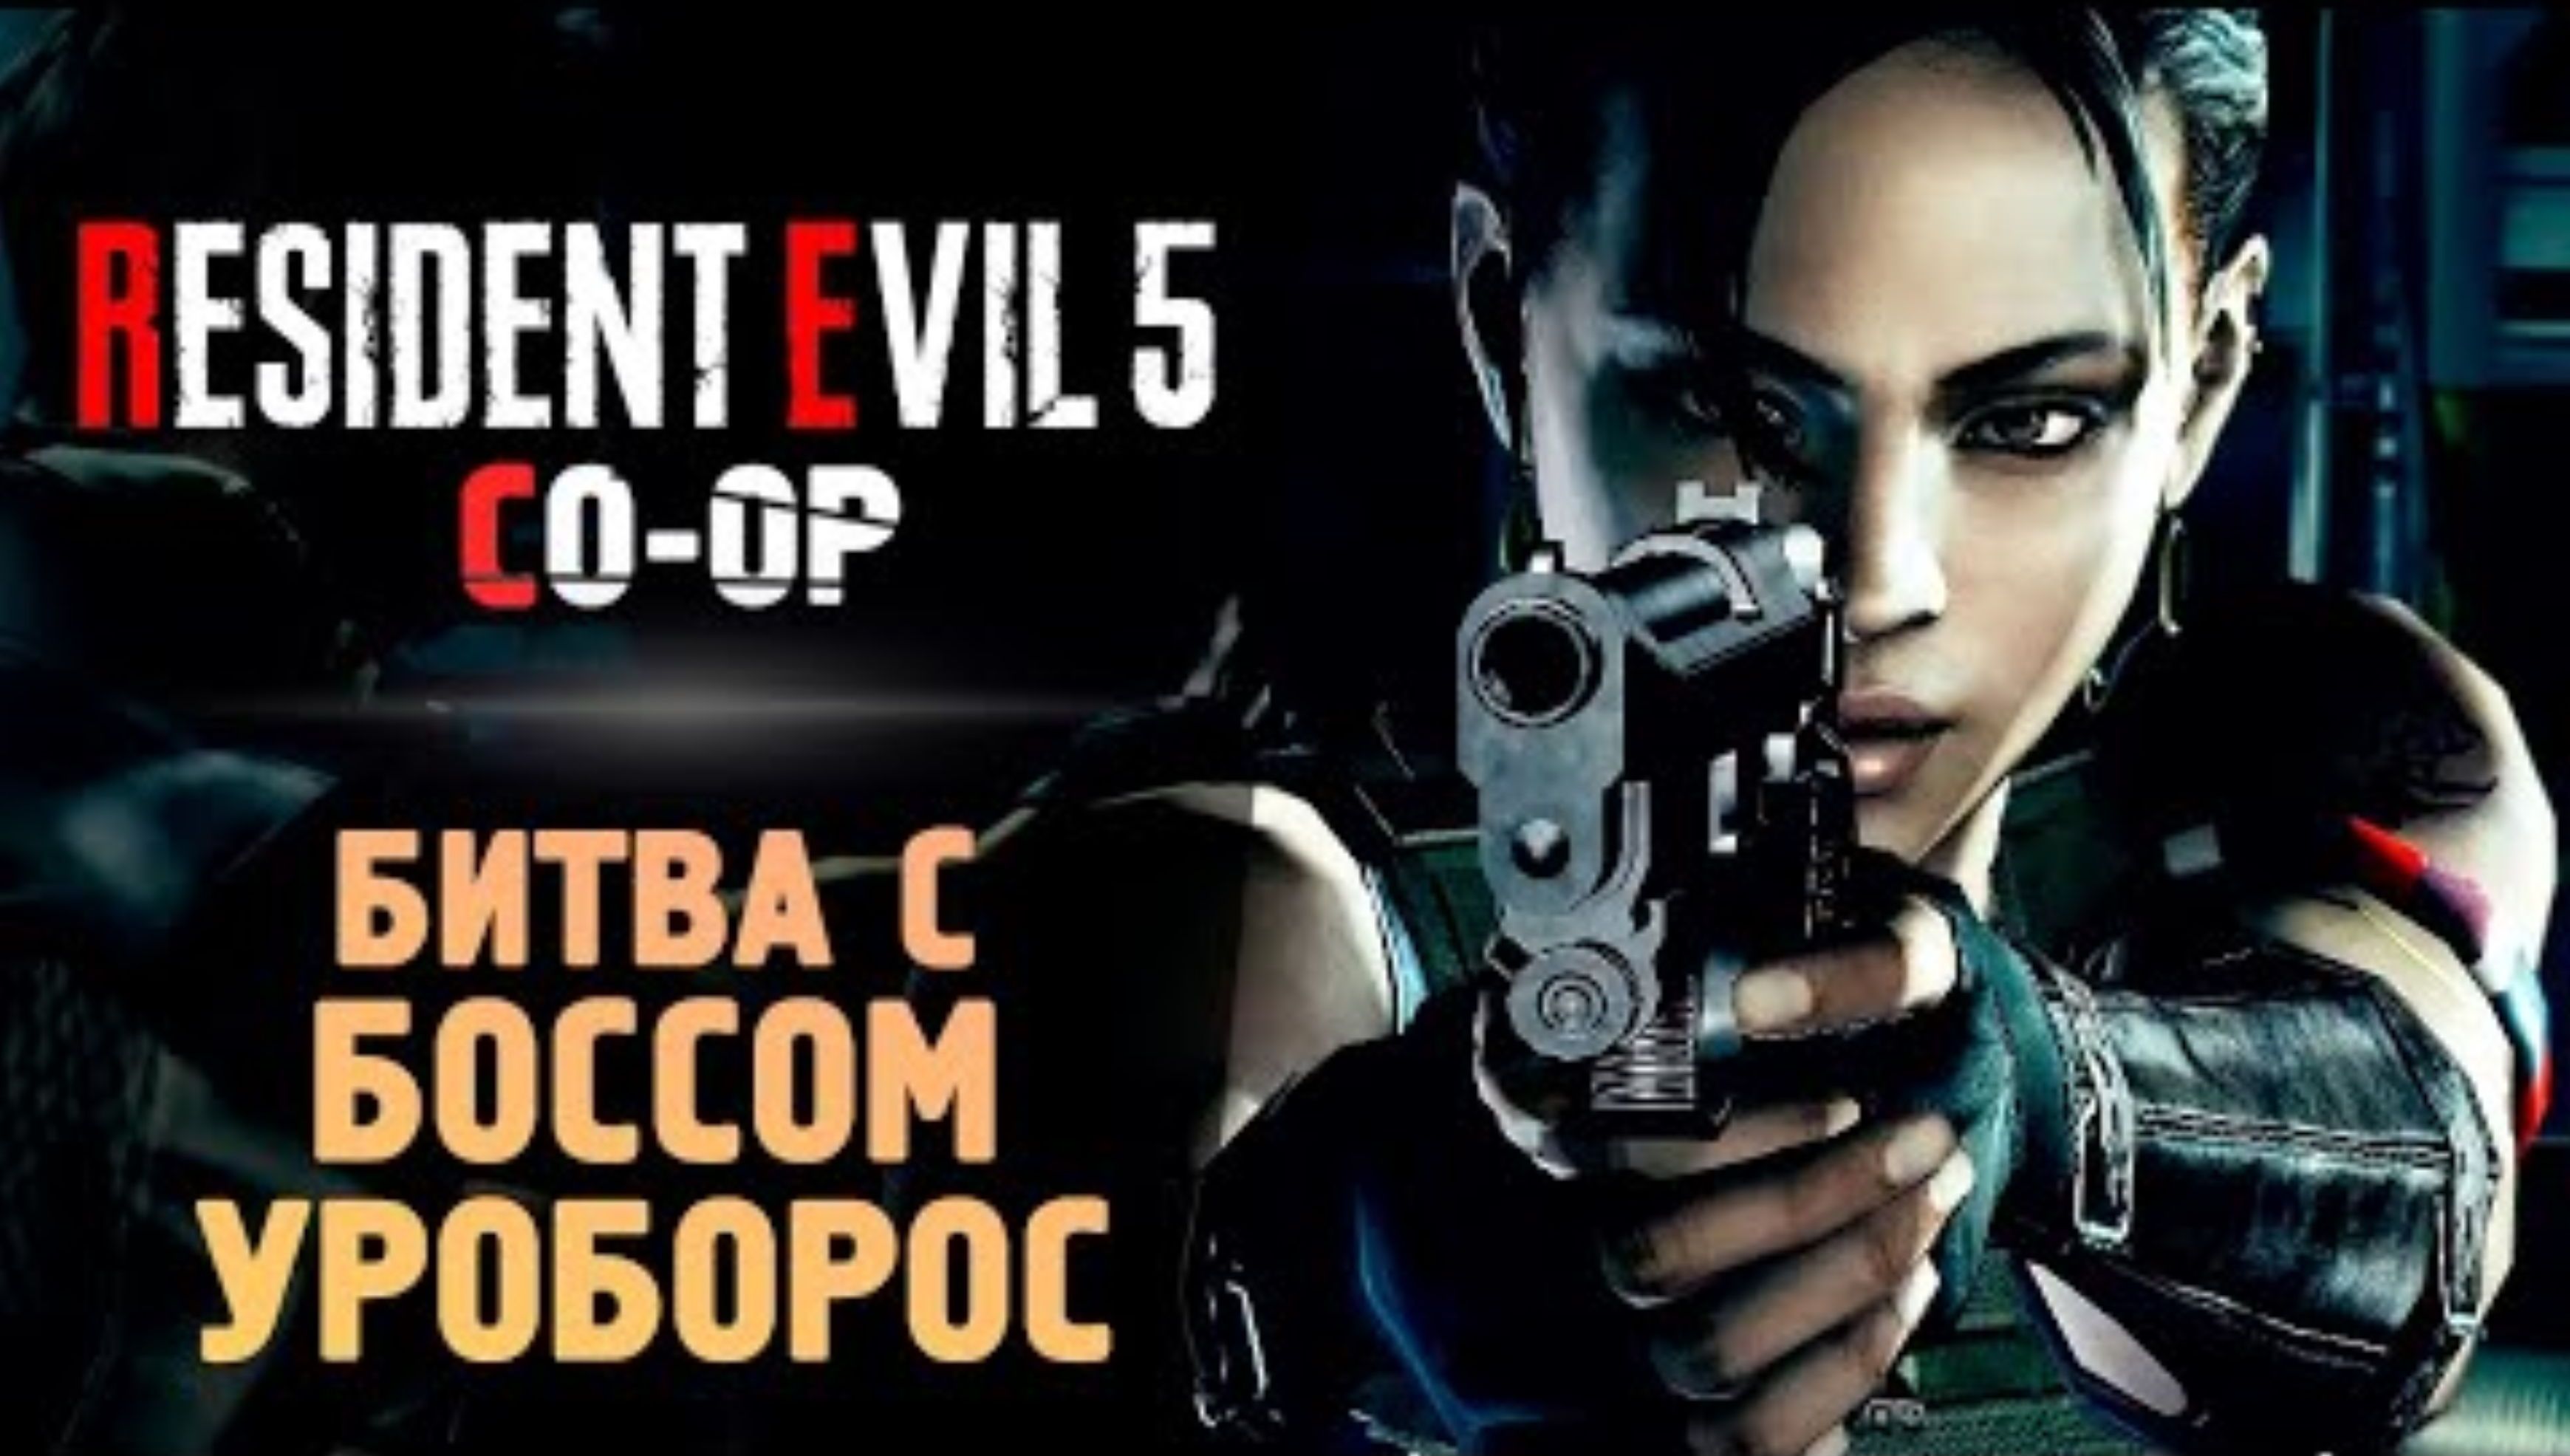 БИТВА С УРОБОРОСОМ - Прохождение - Resident Evil 5 #6